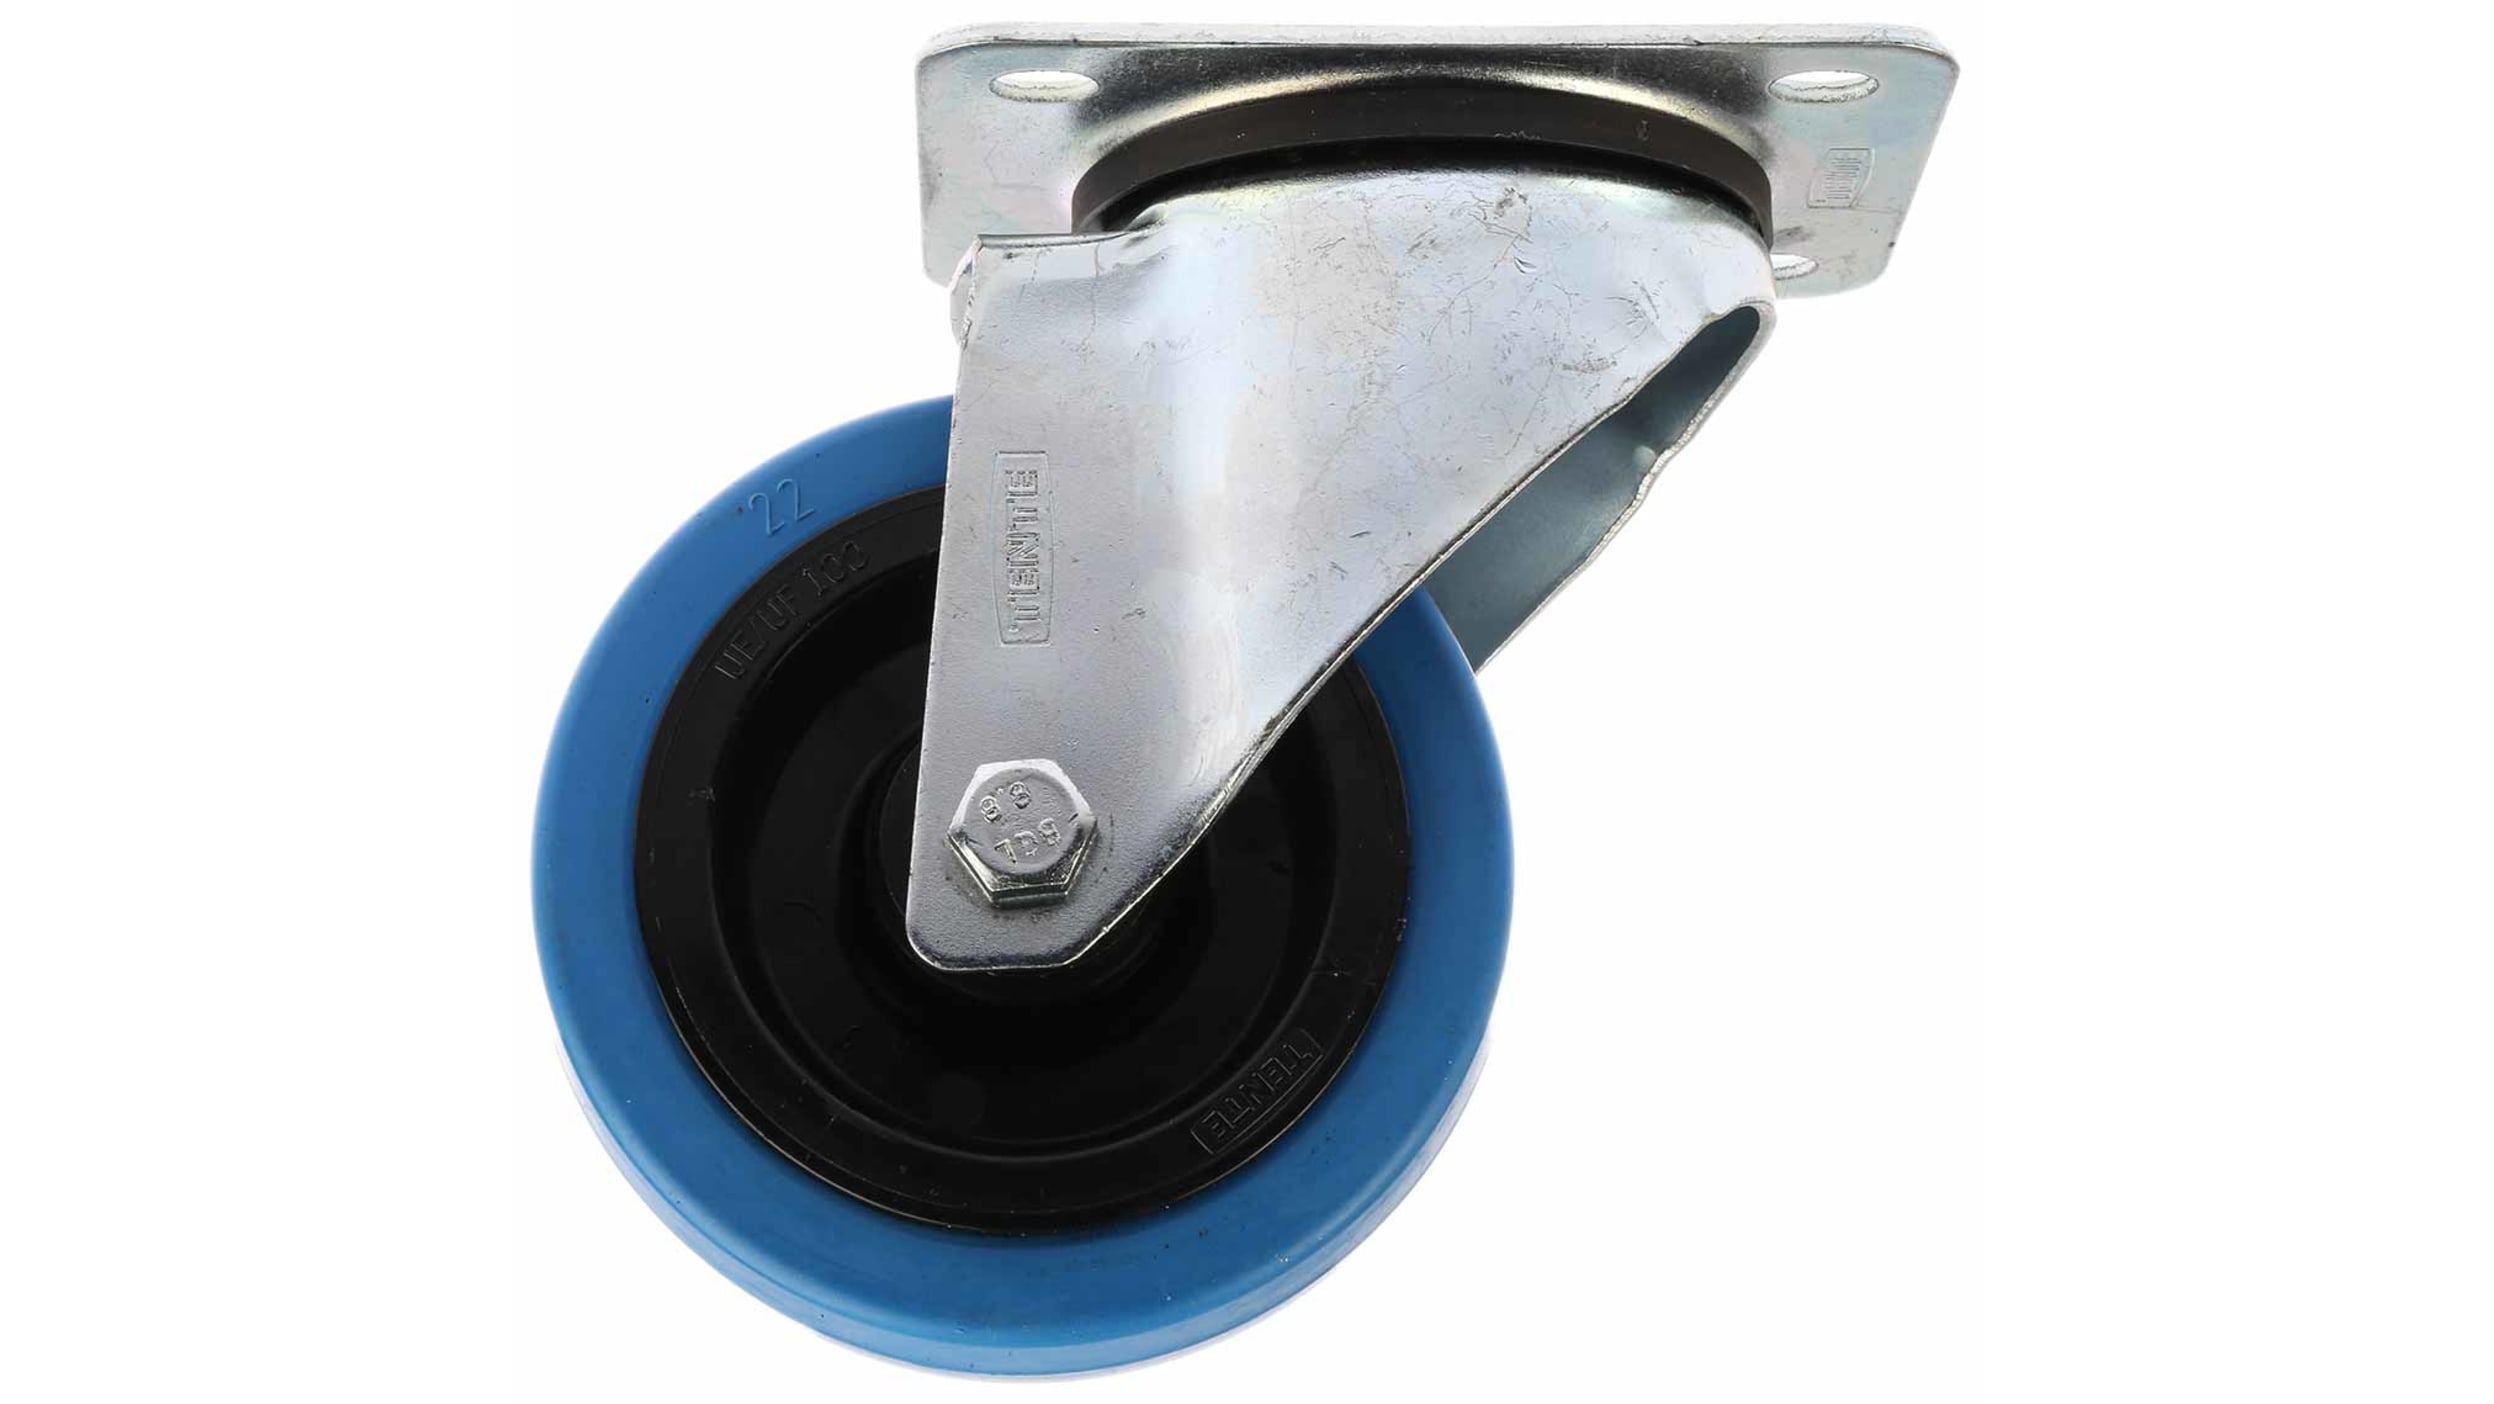 Roulette Pivotante avec Frein Bandage bleu 80 mm pour 32,50 €